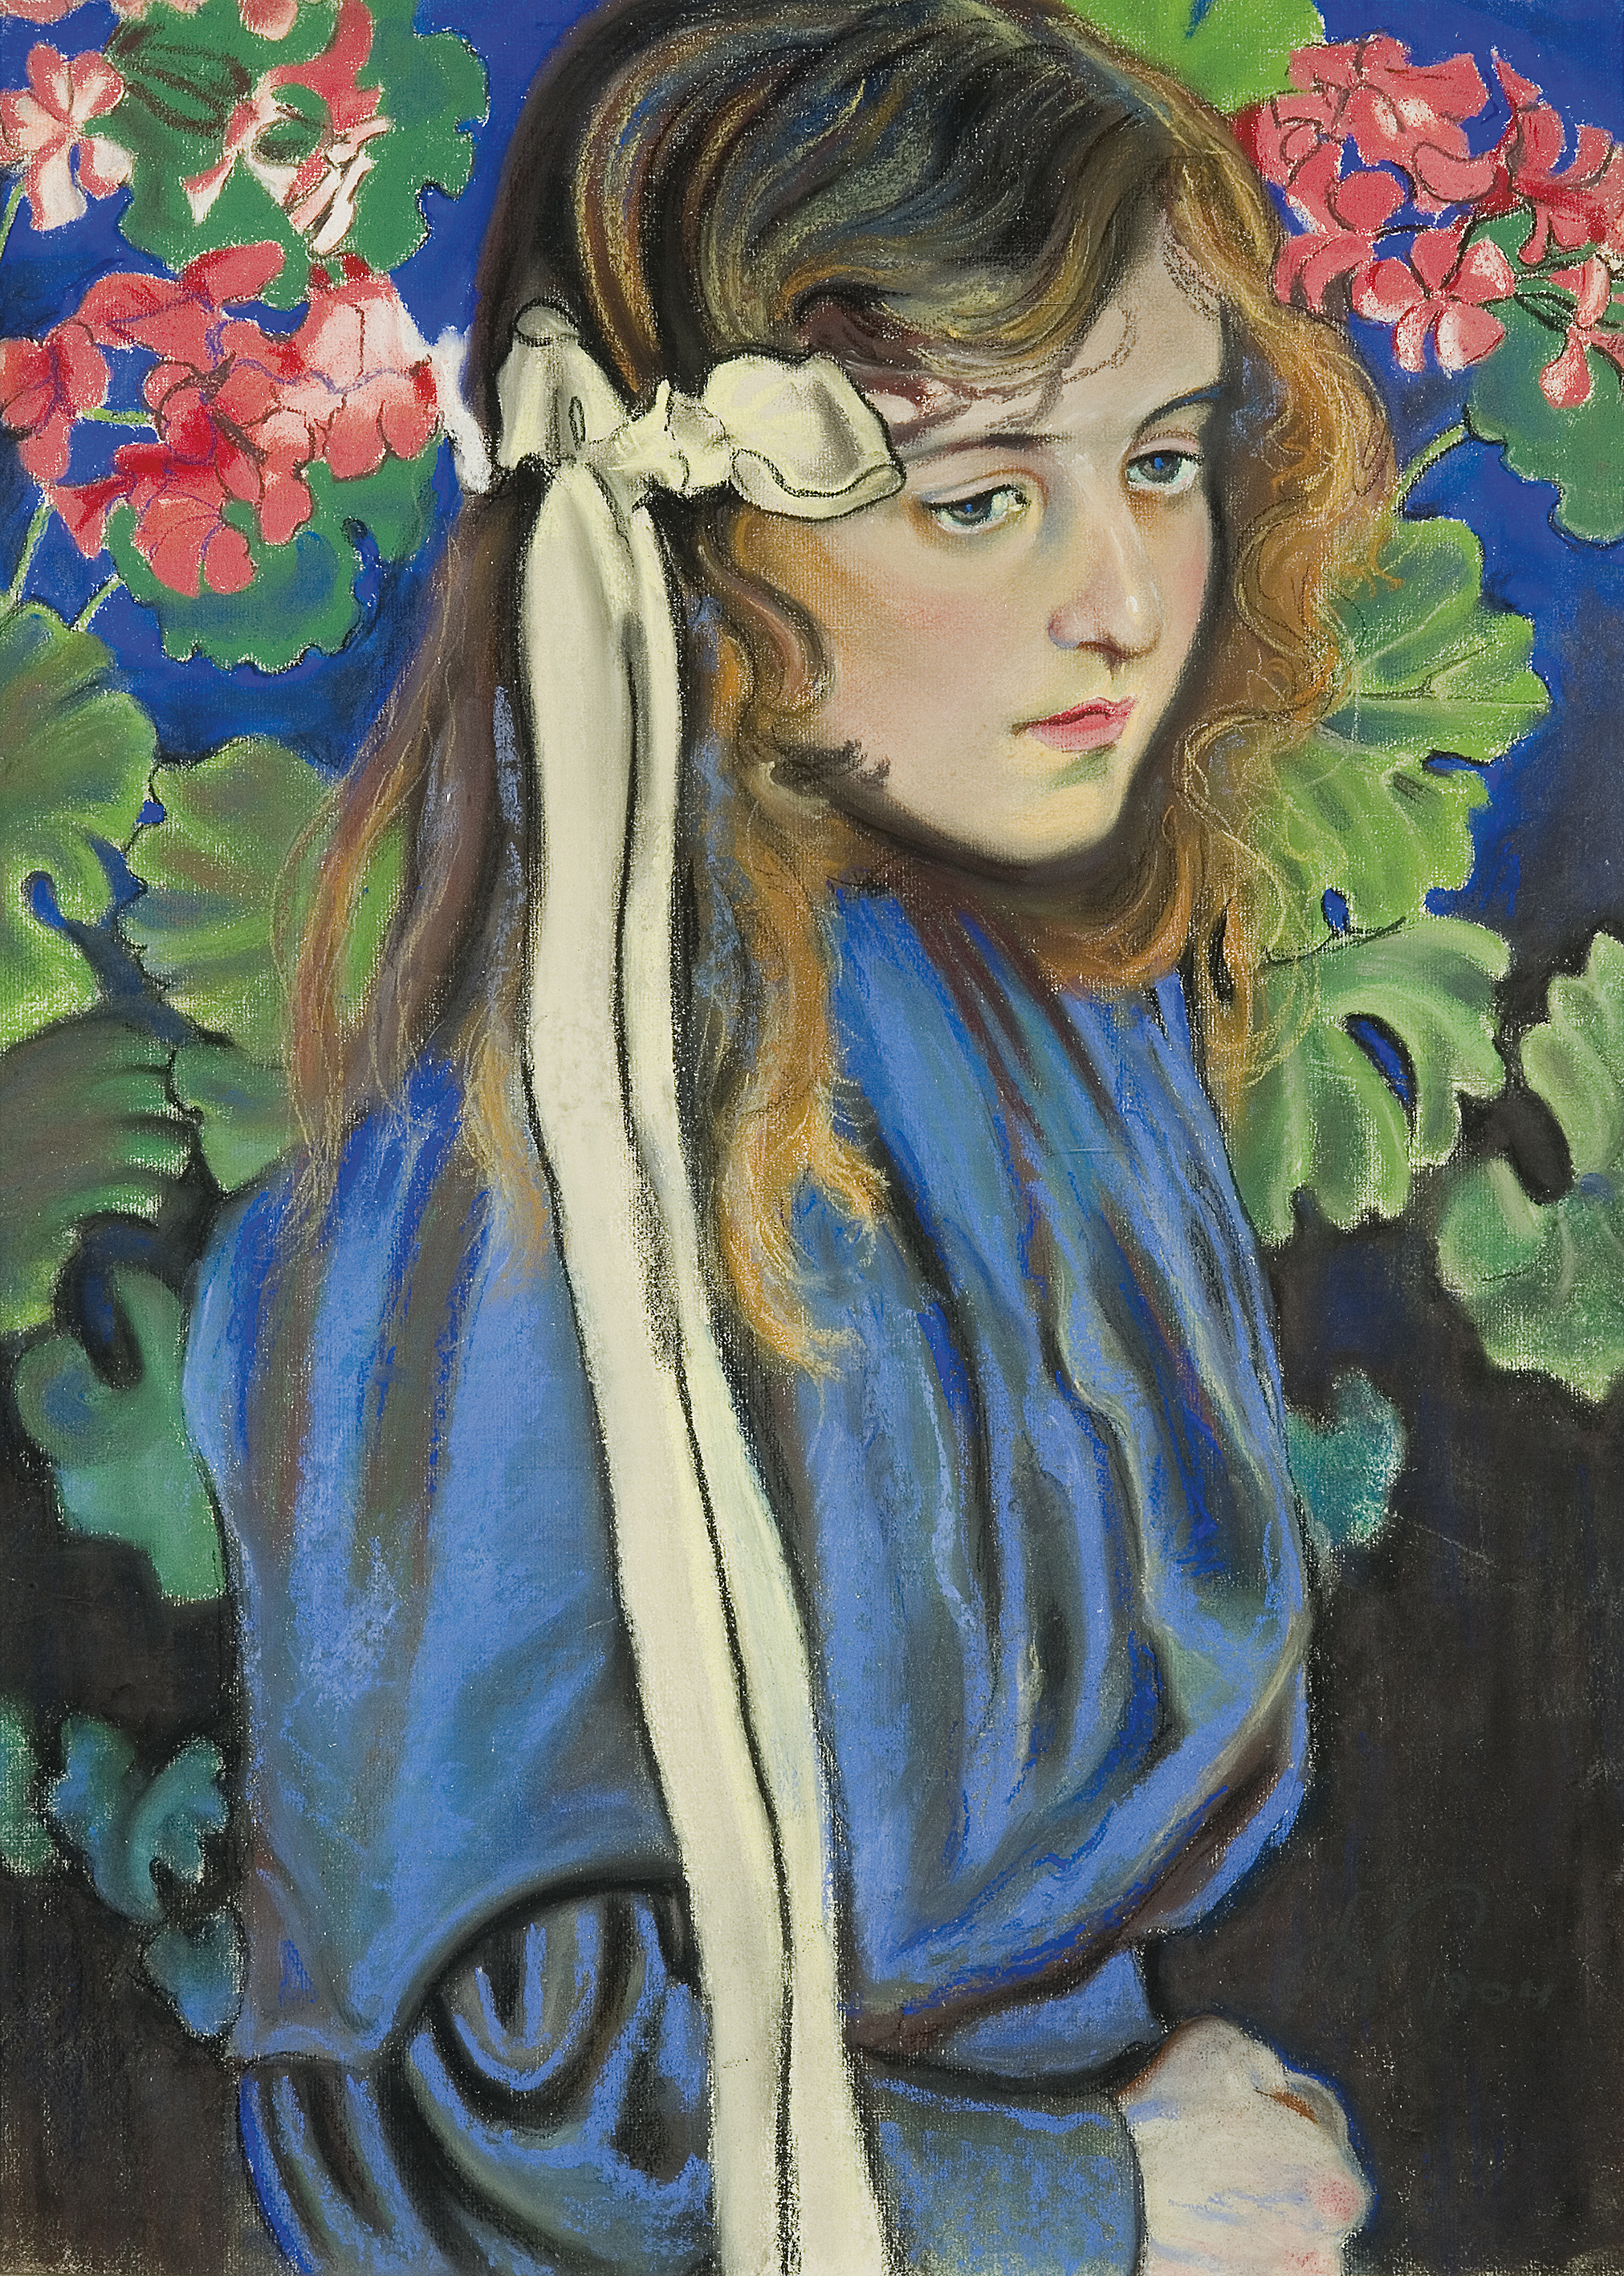 Portrait with Geraniums by Stanisław Wyspiański - 1904 - 65,5x 48,5 cm private collection